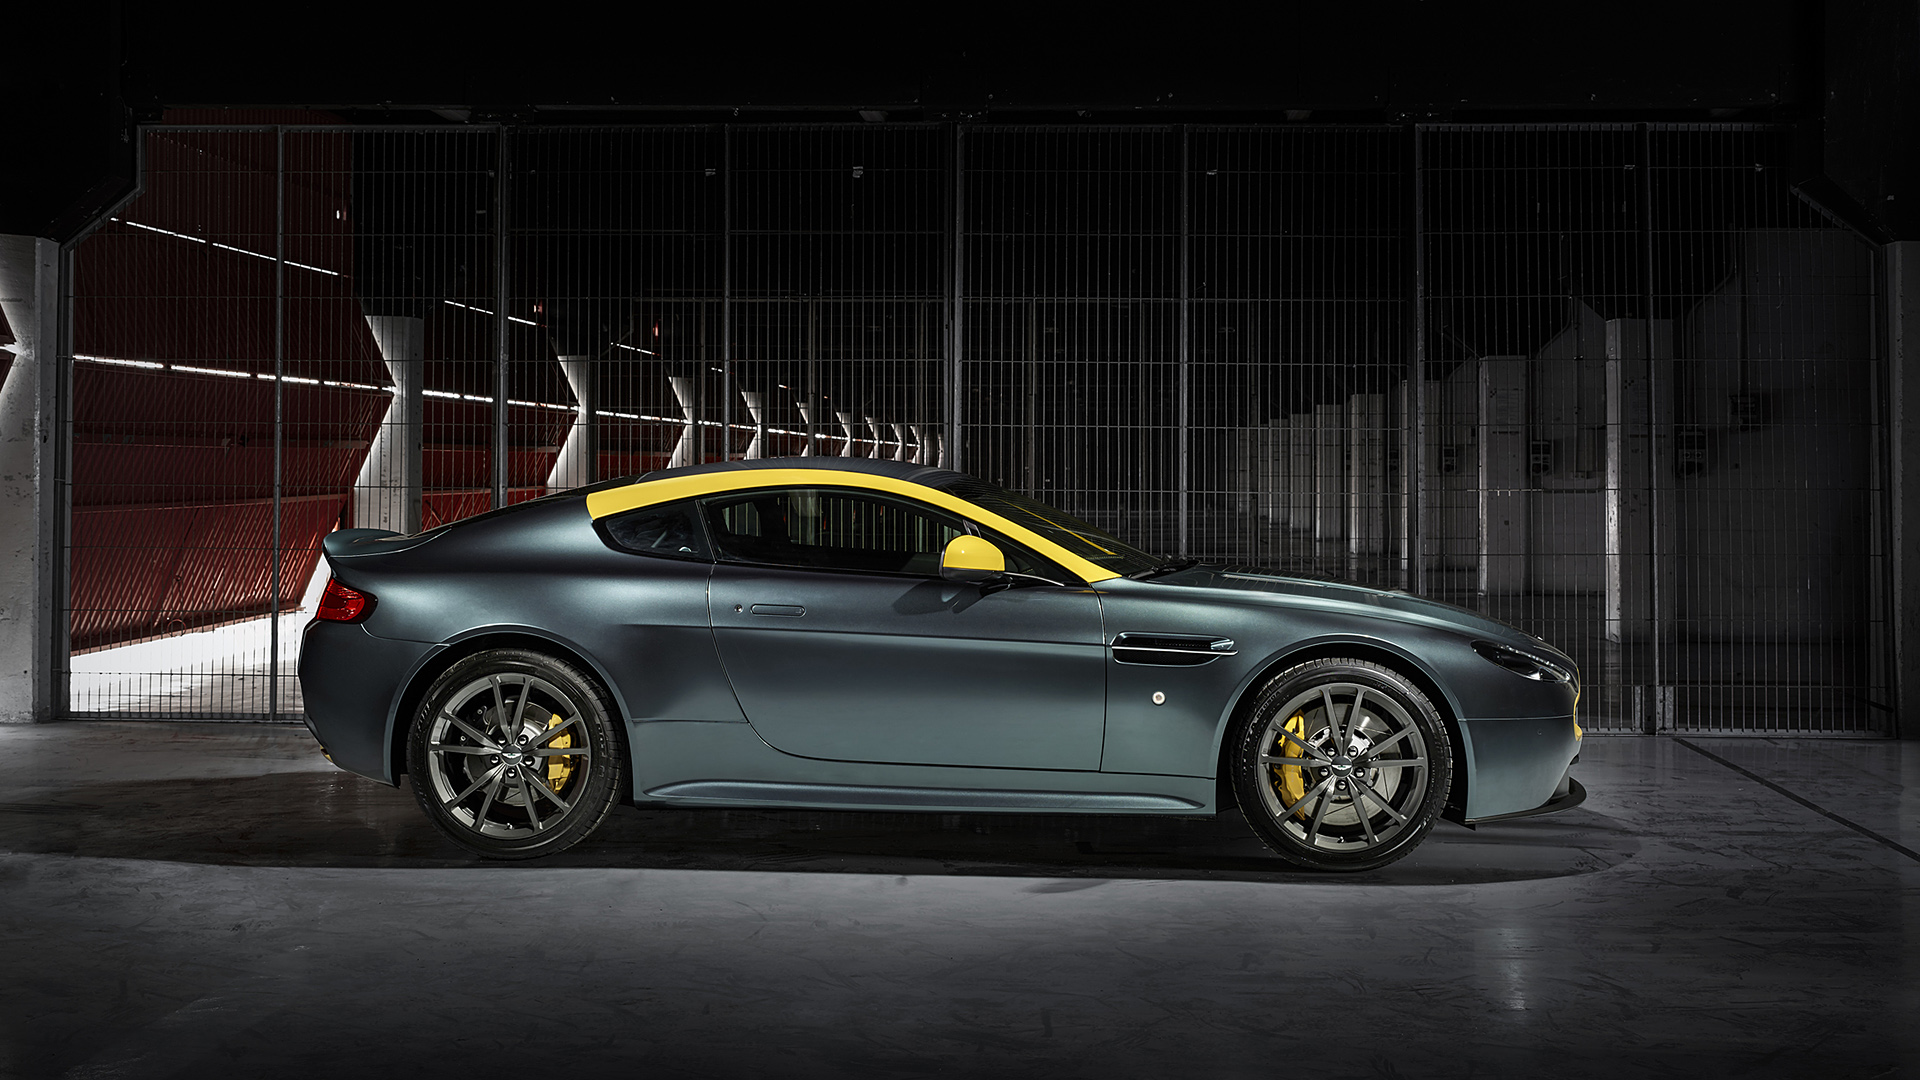  2015 Aston Martin V8 Vantage N430 Wallpaper.